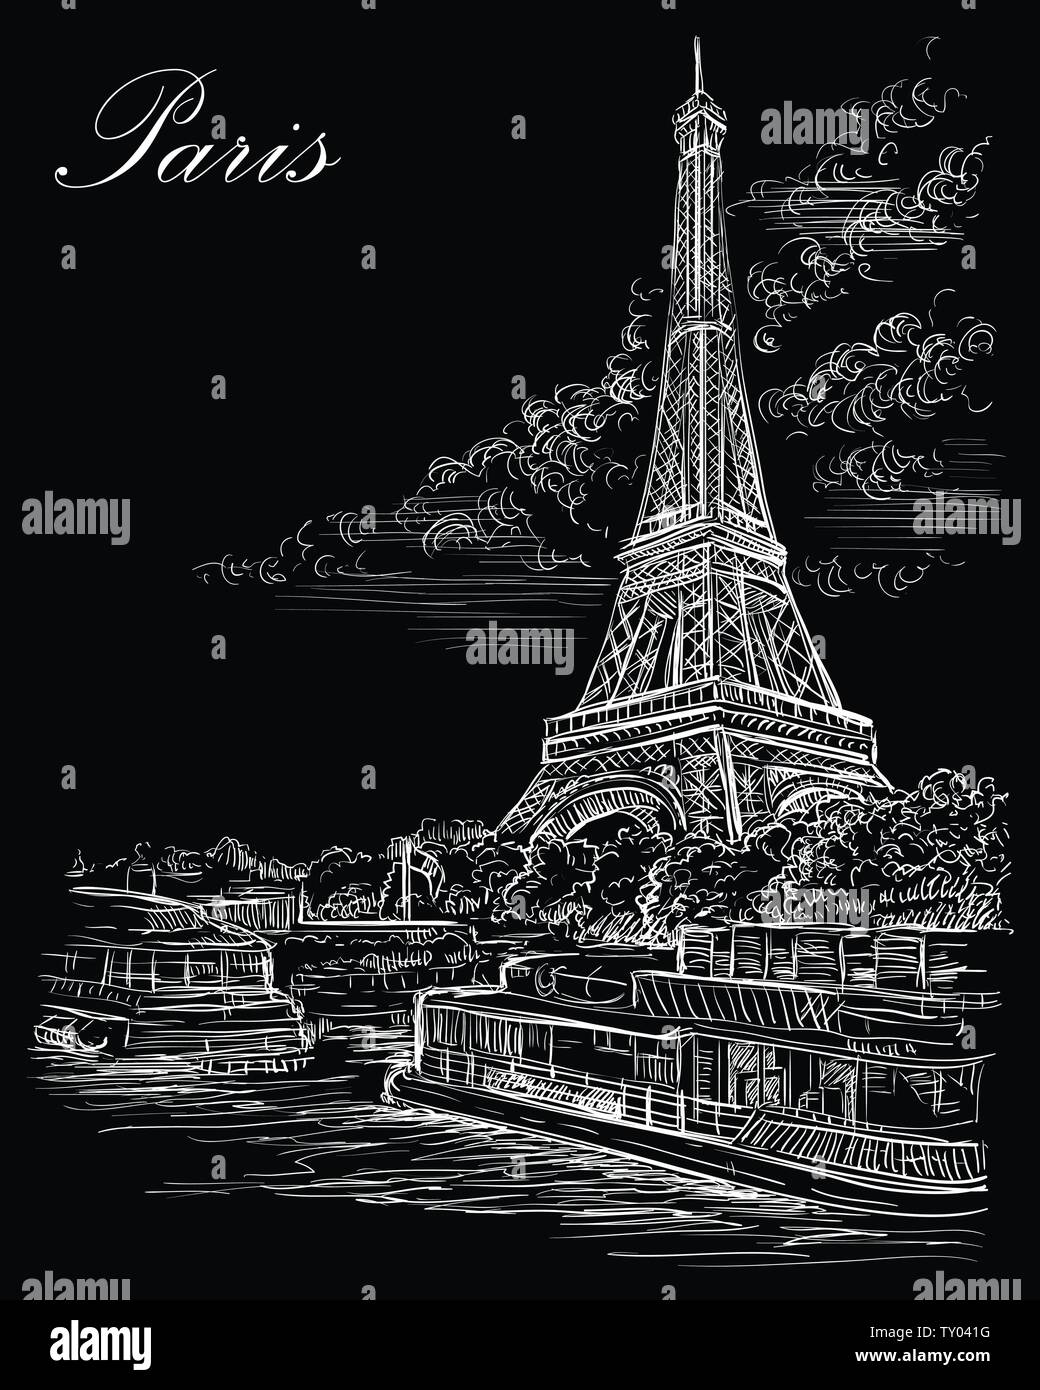 Vector Illustration dessin de la Tour Eiffel (Paris, France). Monument de Paris. Vue urbaine avec la Tour Eiffel, vue sur Seine River Embankment. Vect Illustration de Vecteur